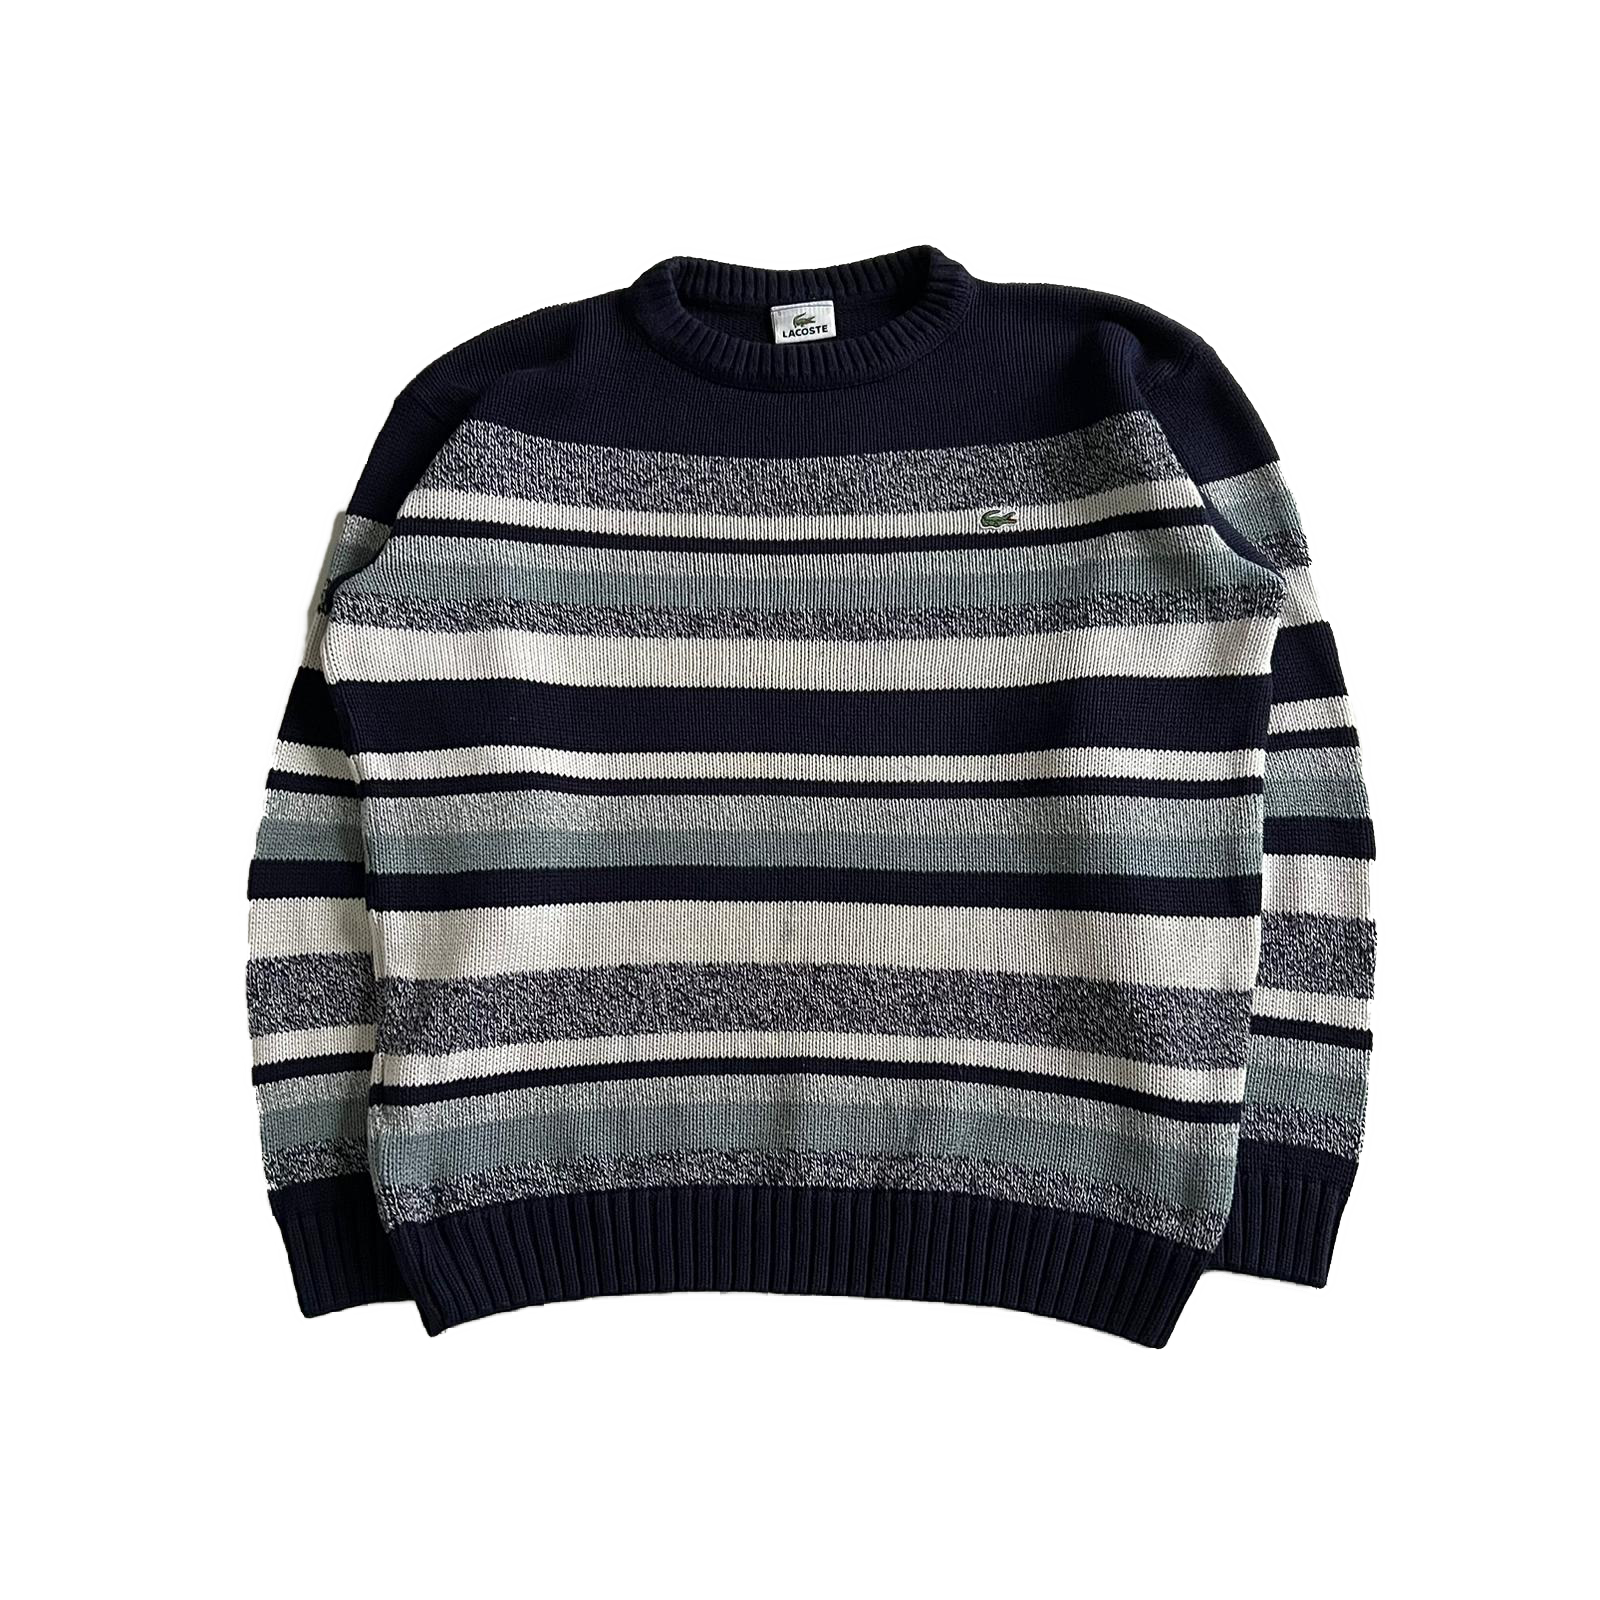 00's Lacoste knit sweatshirt